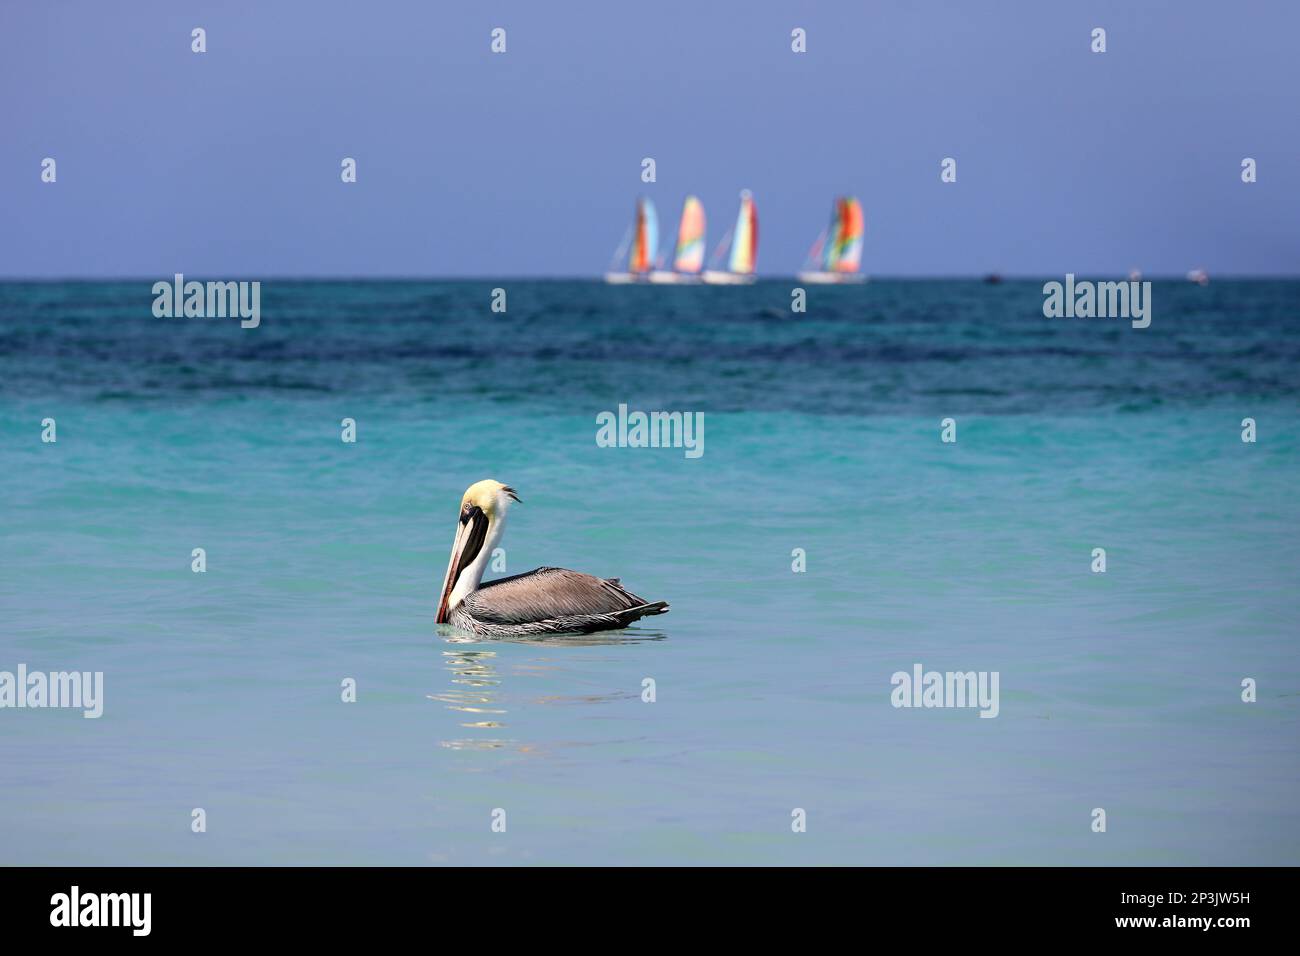 Pelikane schwimmen im Atlantischen Ozean auf Segelbooten im Hintergrund. Wilder Vogel auf blauen Wellen Stockfoto